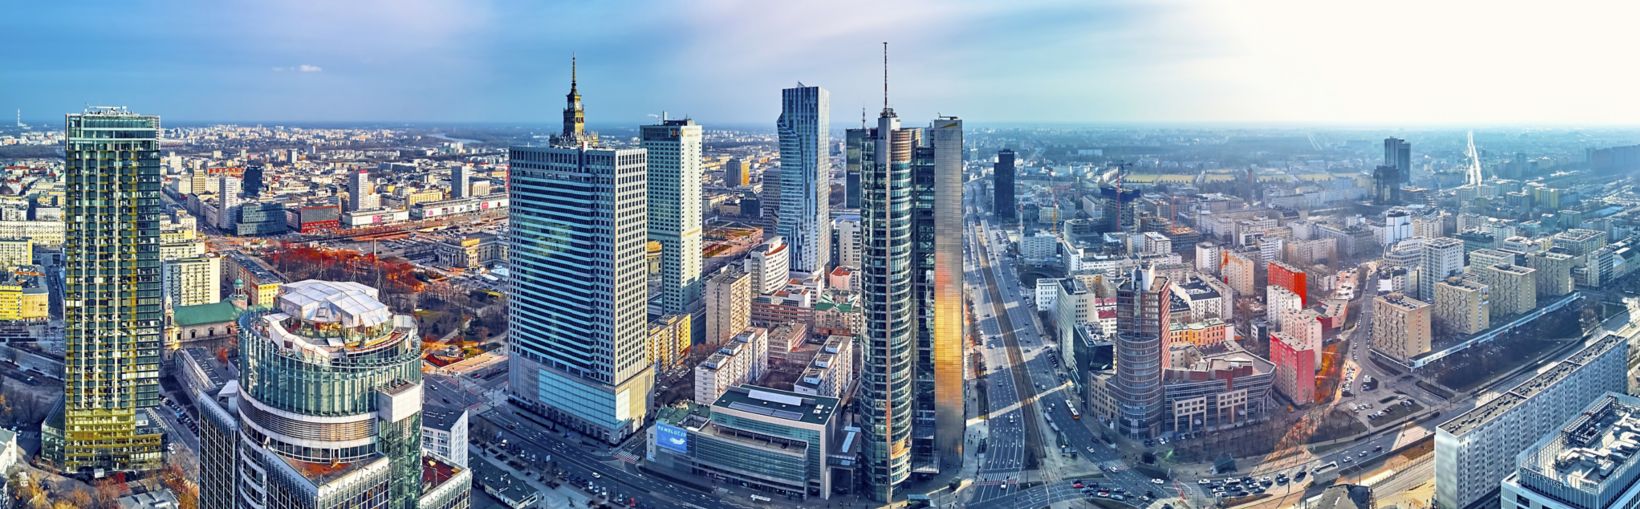 Magnifique vue aérienne panoramique, prise par drone, de la ville moderne de Varsovie